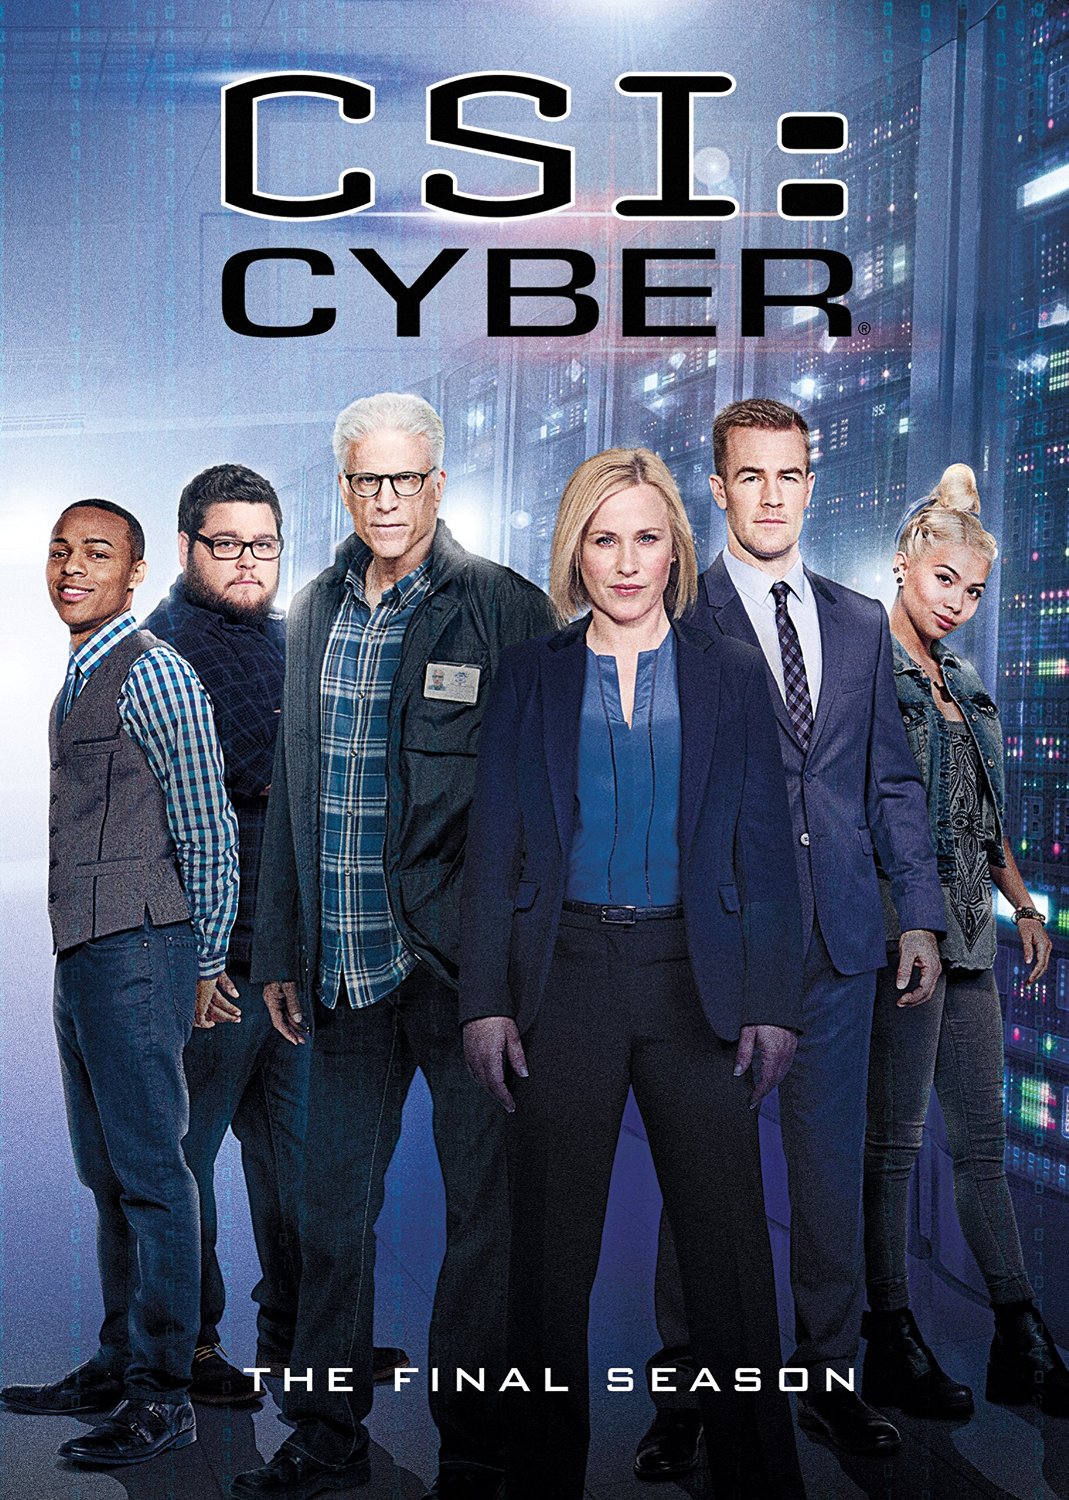 CSI: Cyber - Season 2